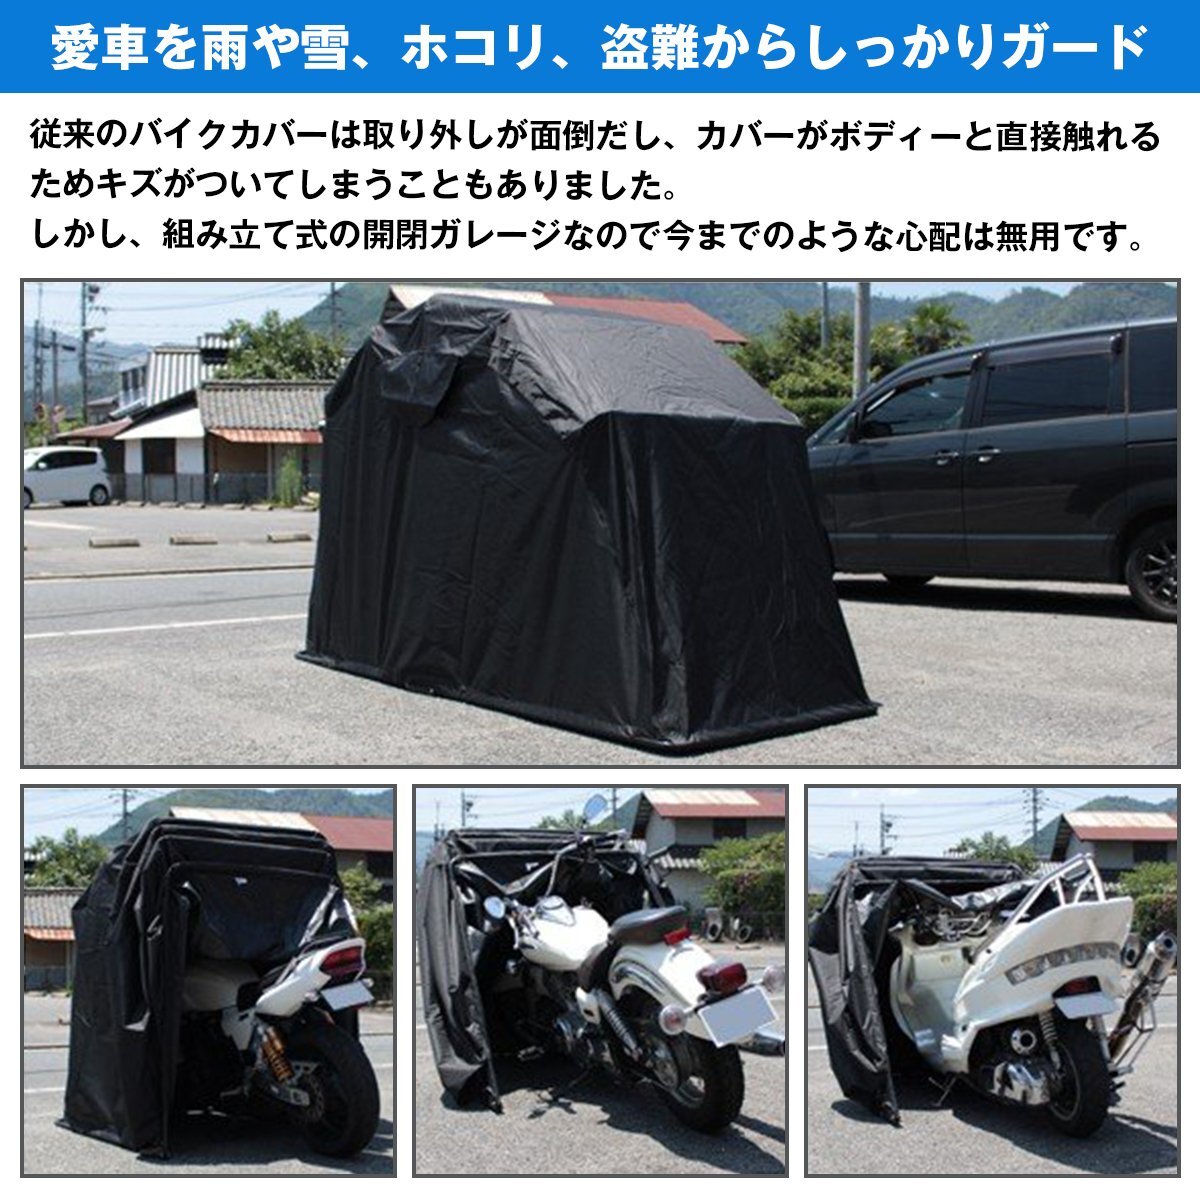 【新品即納】 バイクガレージ テント アルミフレーム サイクルガレージ ブラック 黒 Sサイズ 265cmx105cmx155cm 車庫 バイクシェルターの画像3